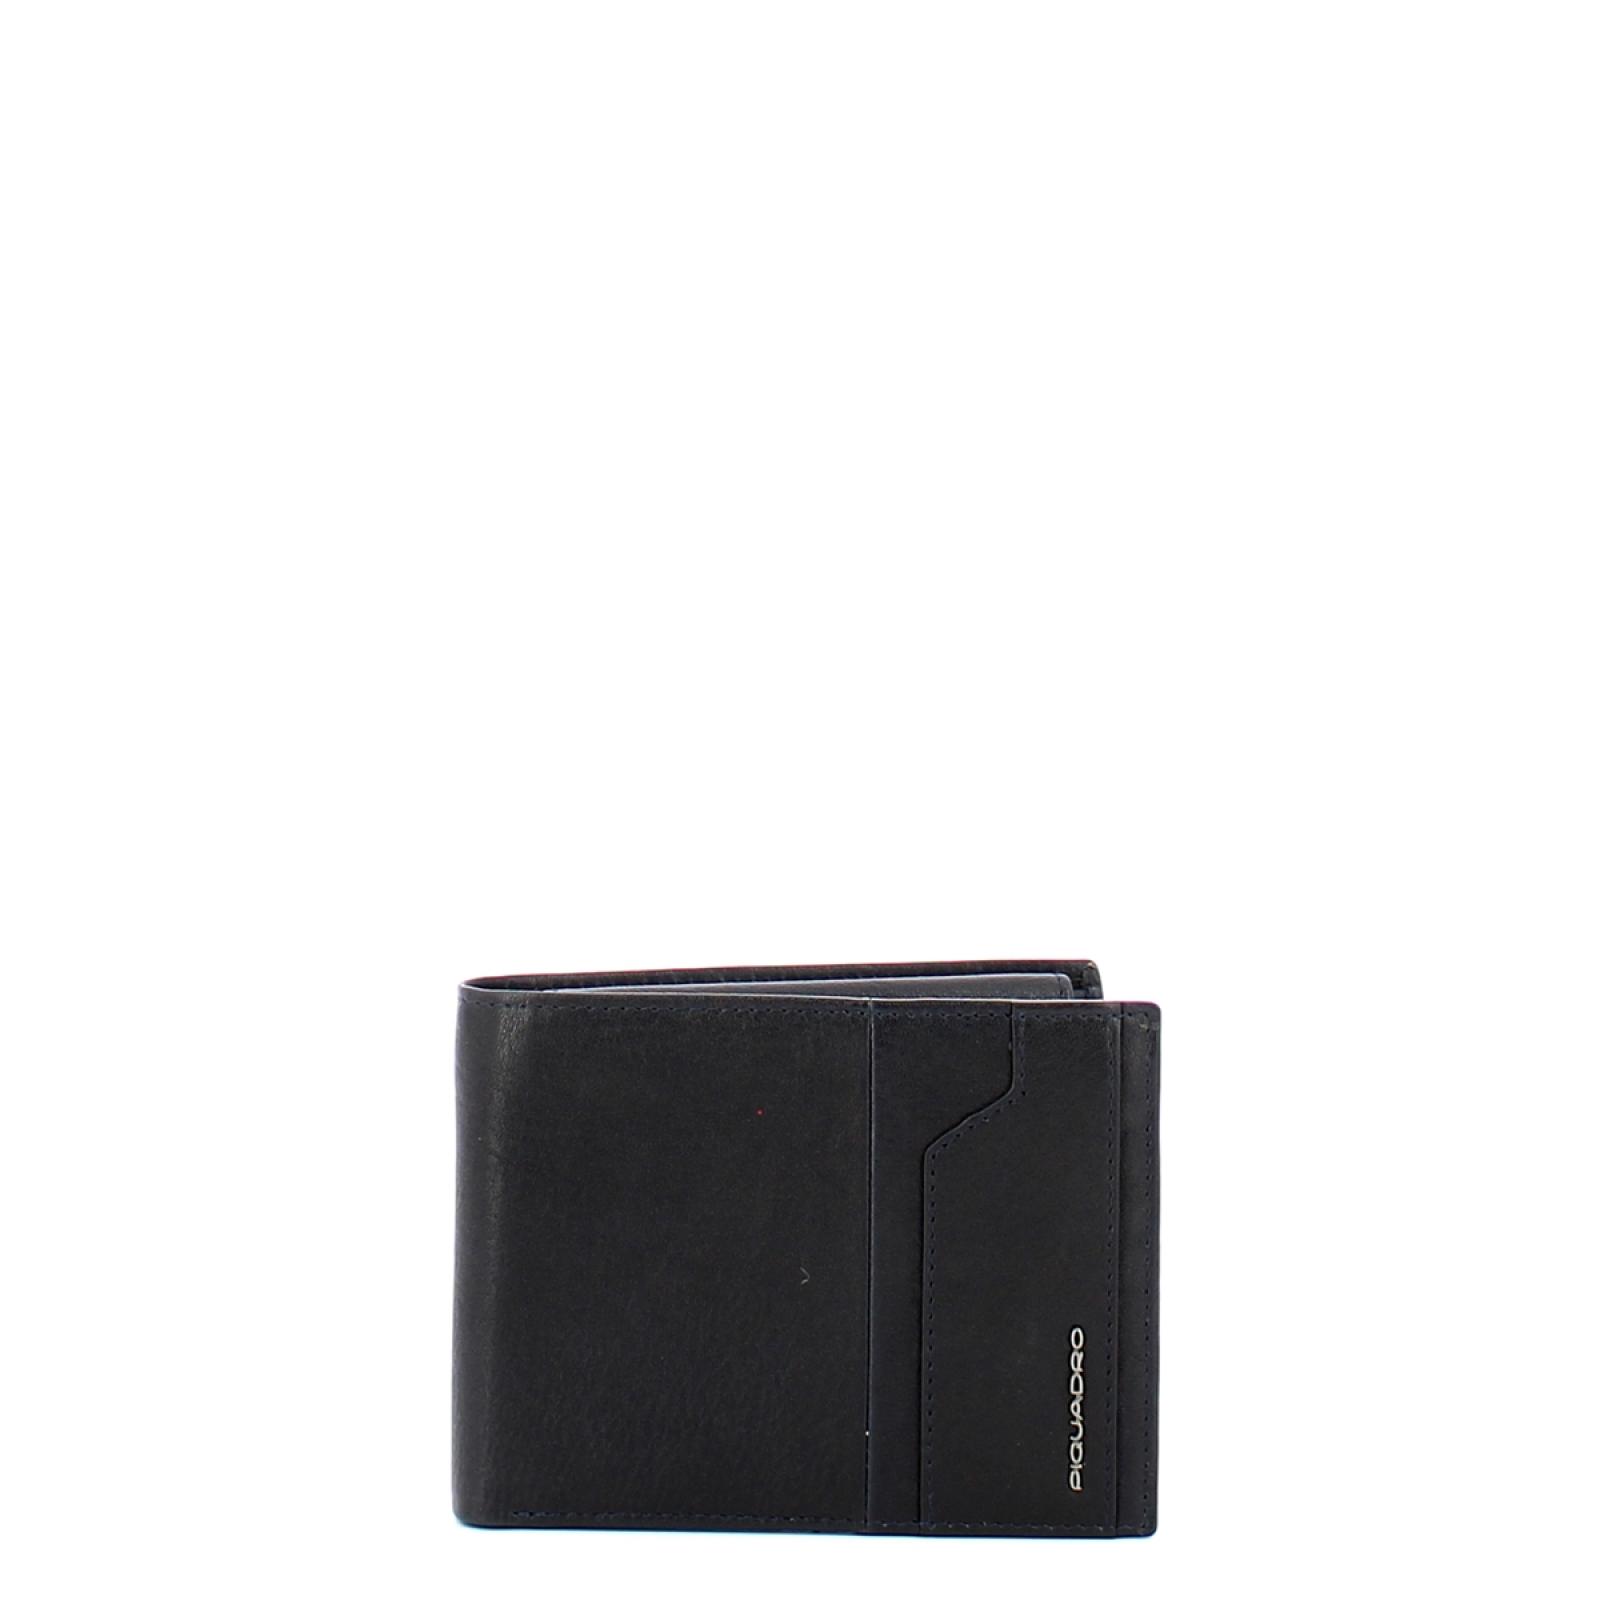 Piquadro Portafogli RFID Kobe con portamonete - 1